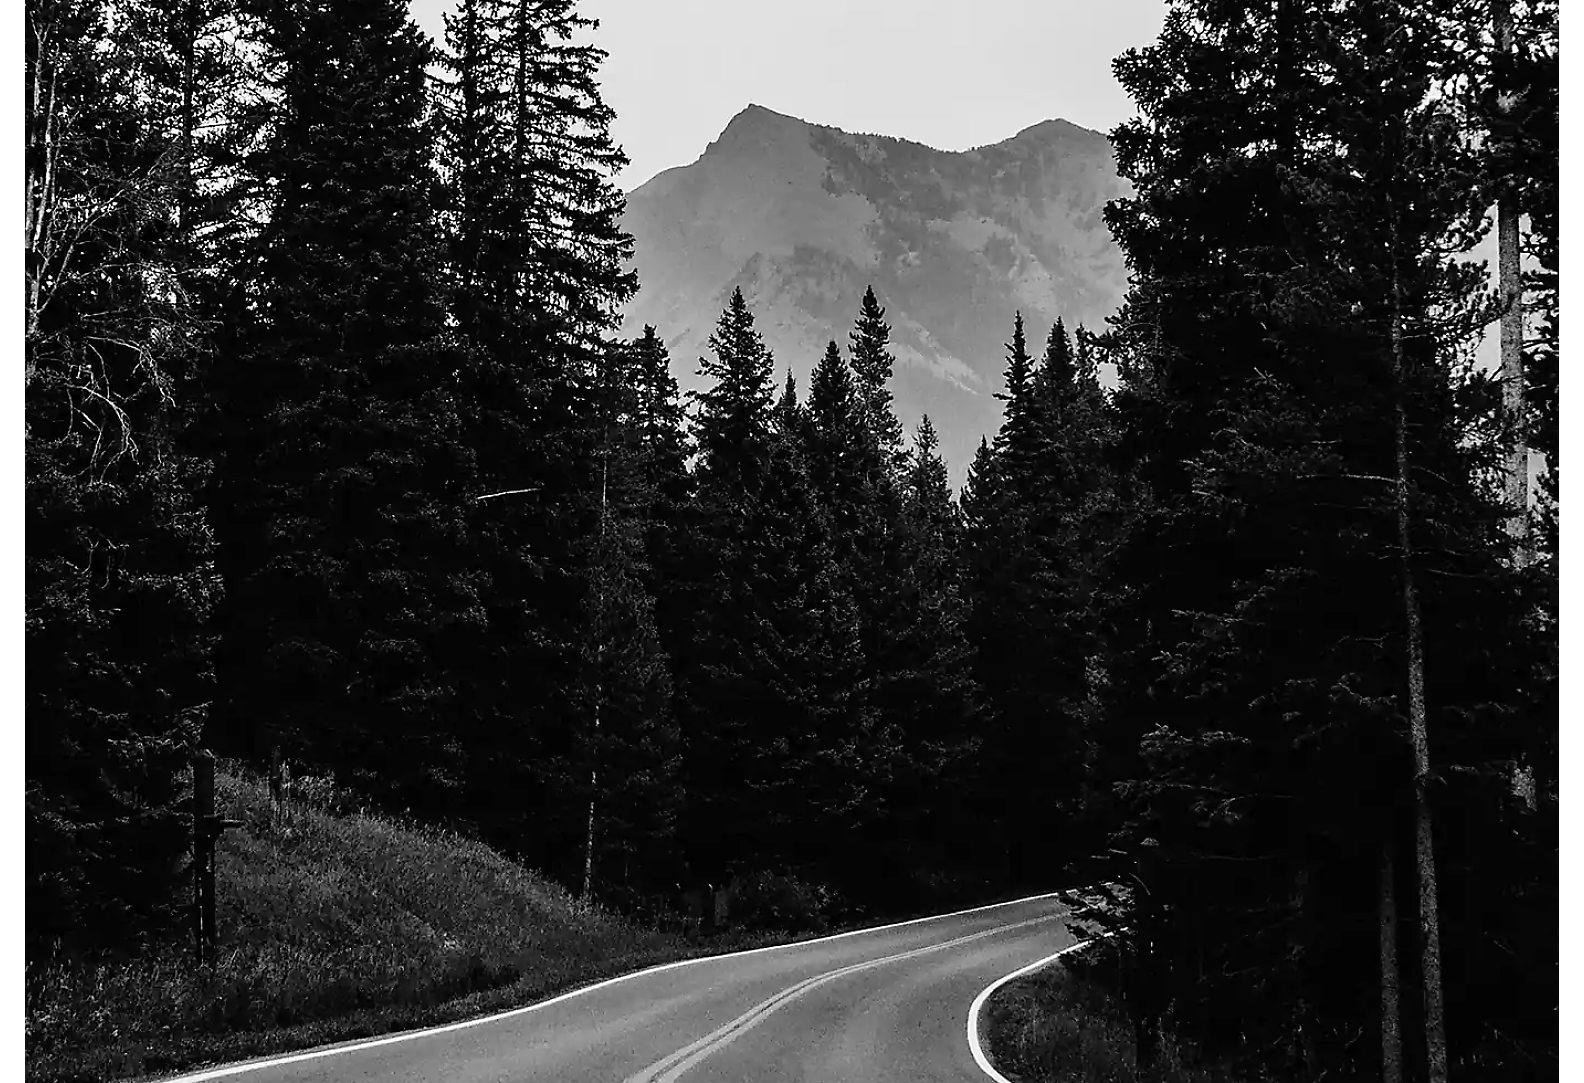 Een tweebaansweg door een bos met een bergtop op de achtergrond, in zwart-wit